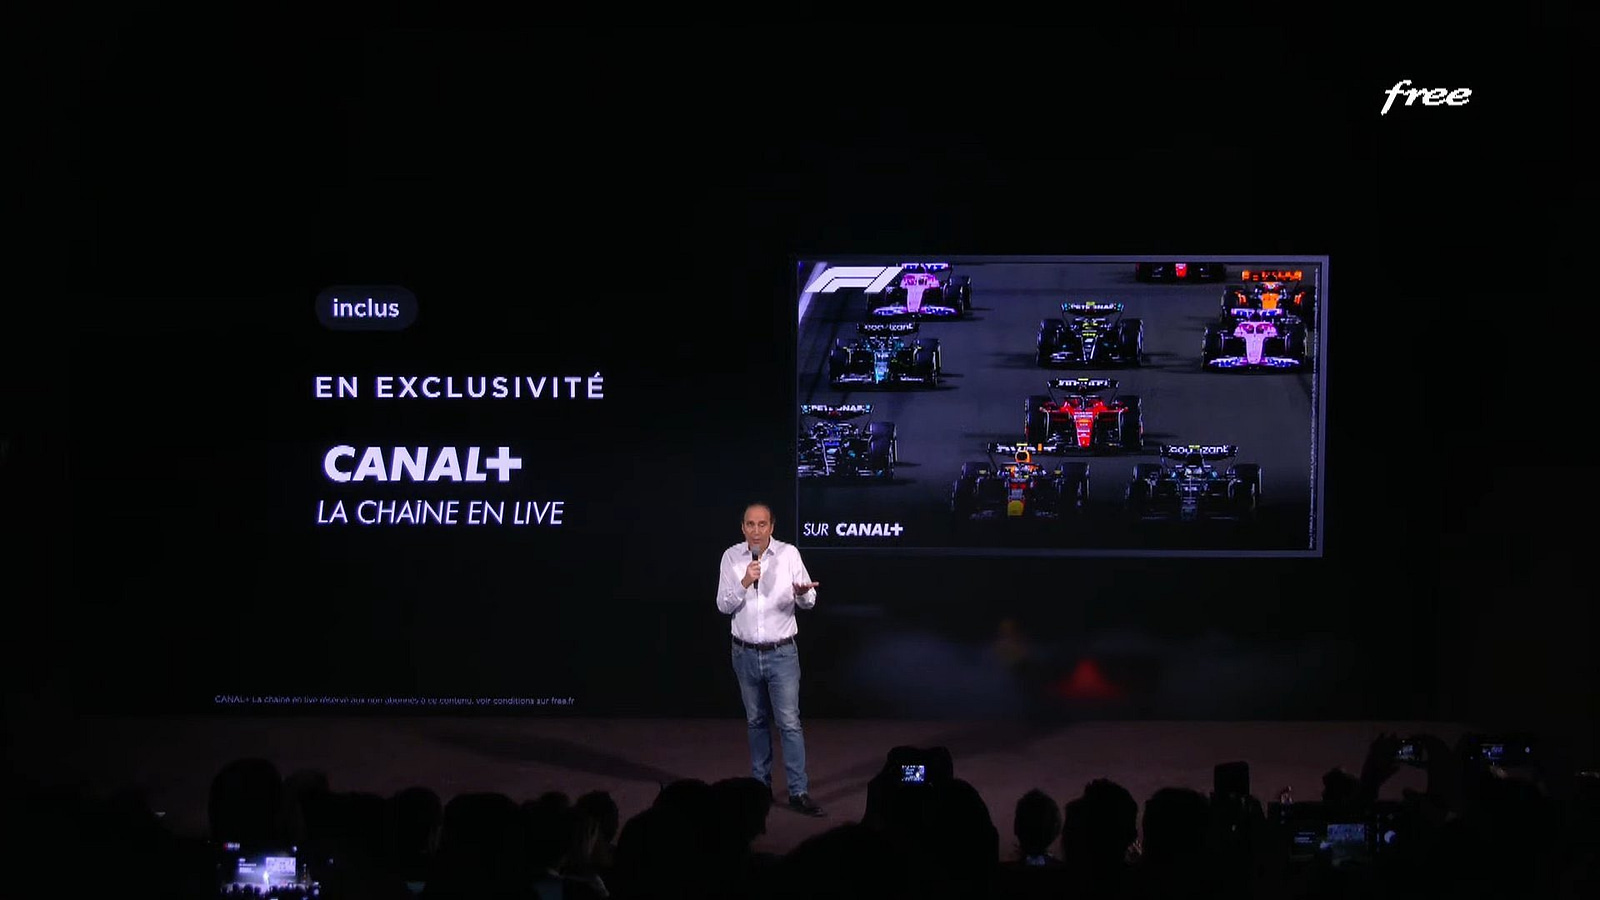 Xavier Niel (patron de Free) présente sa nouvelle Freebox Ultra, la première box qui intègre la chaine Canal+